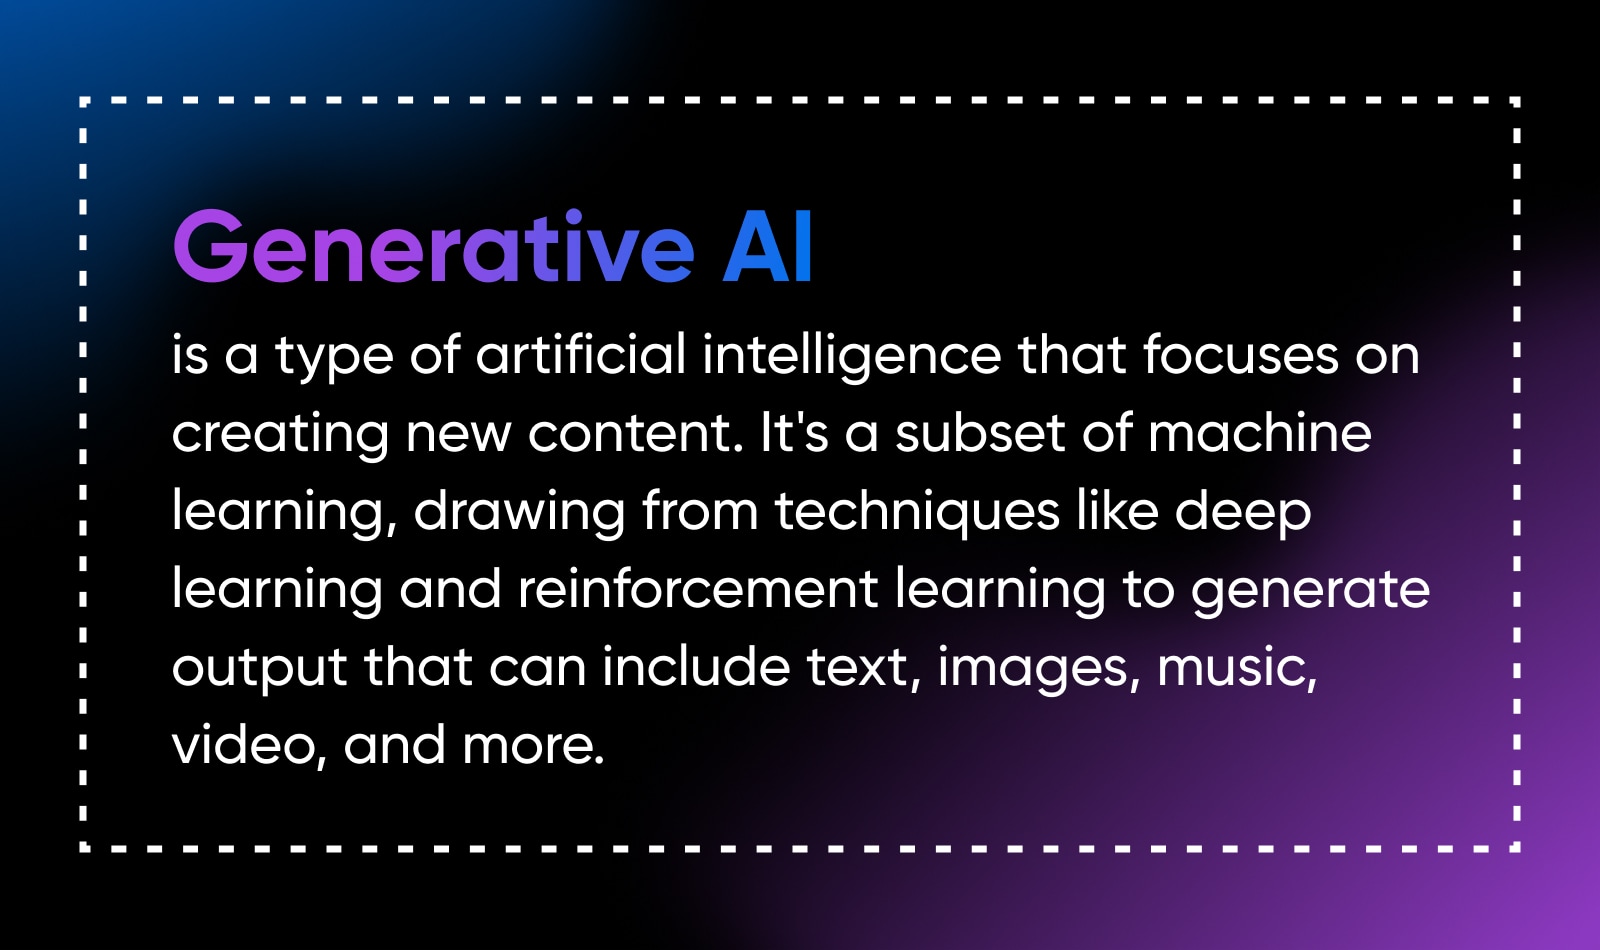 Using Generative AI: A Creative's Guide